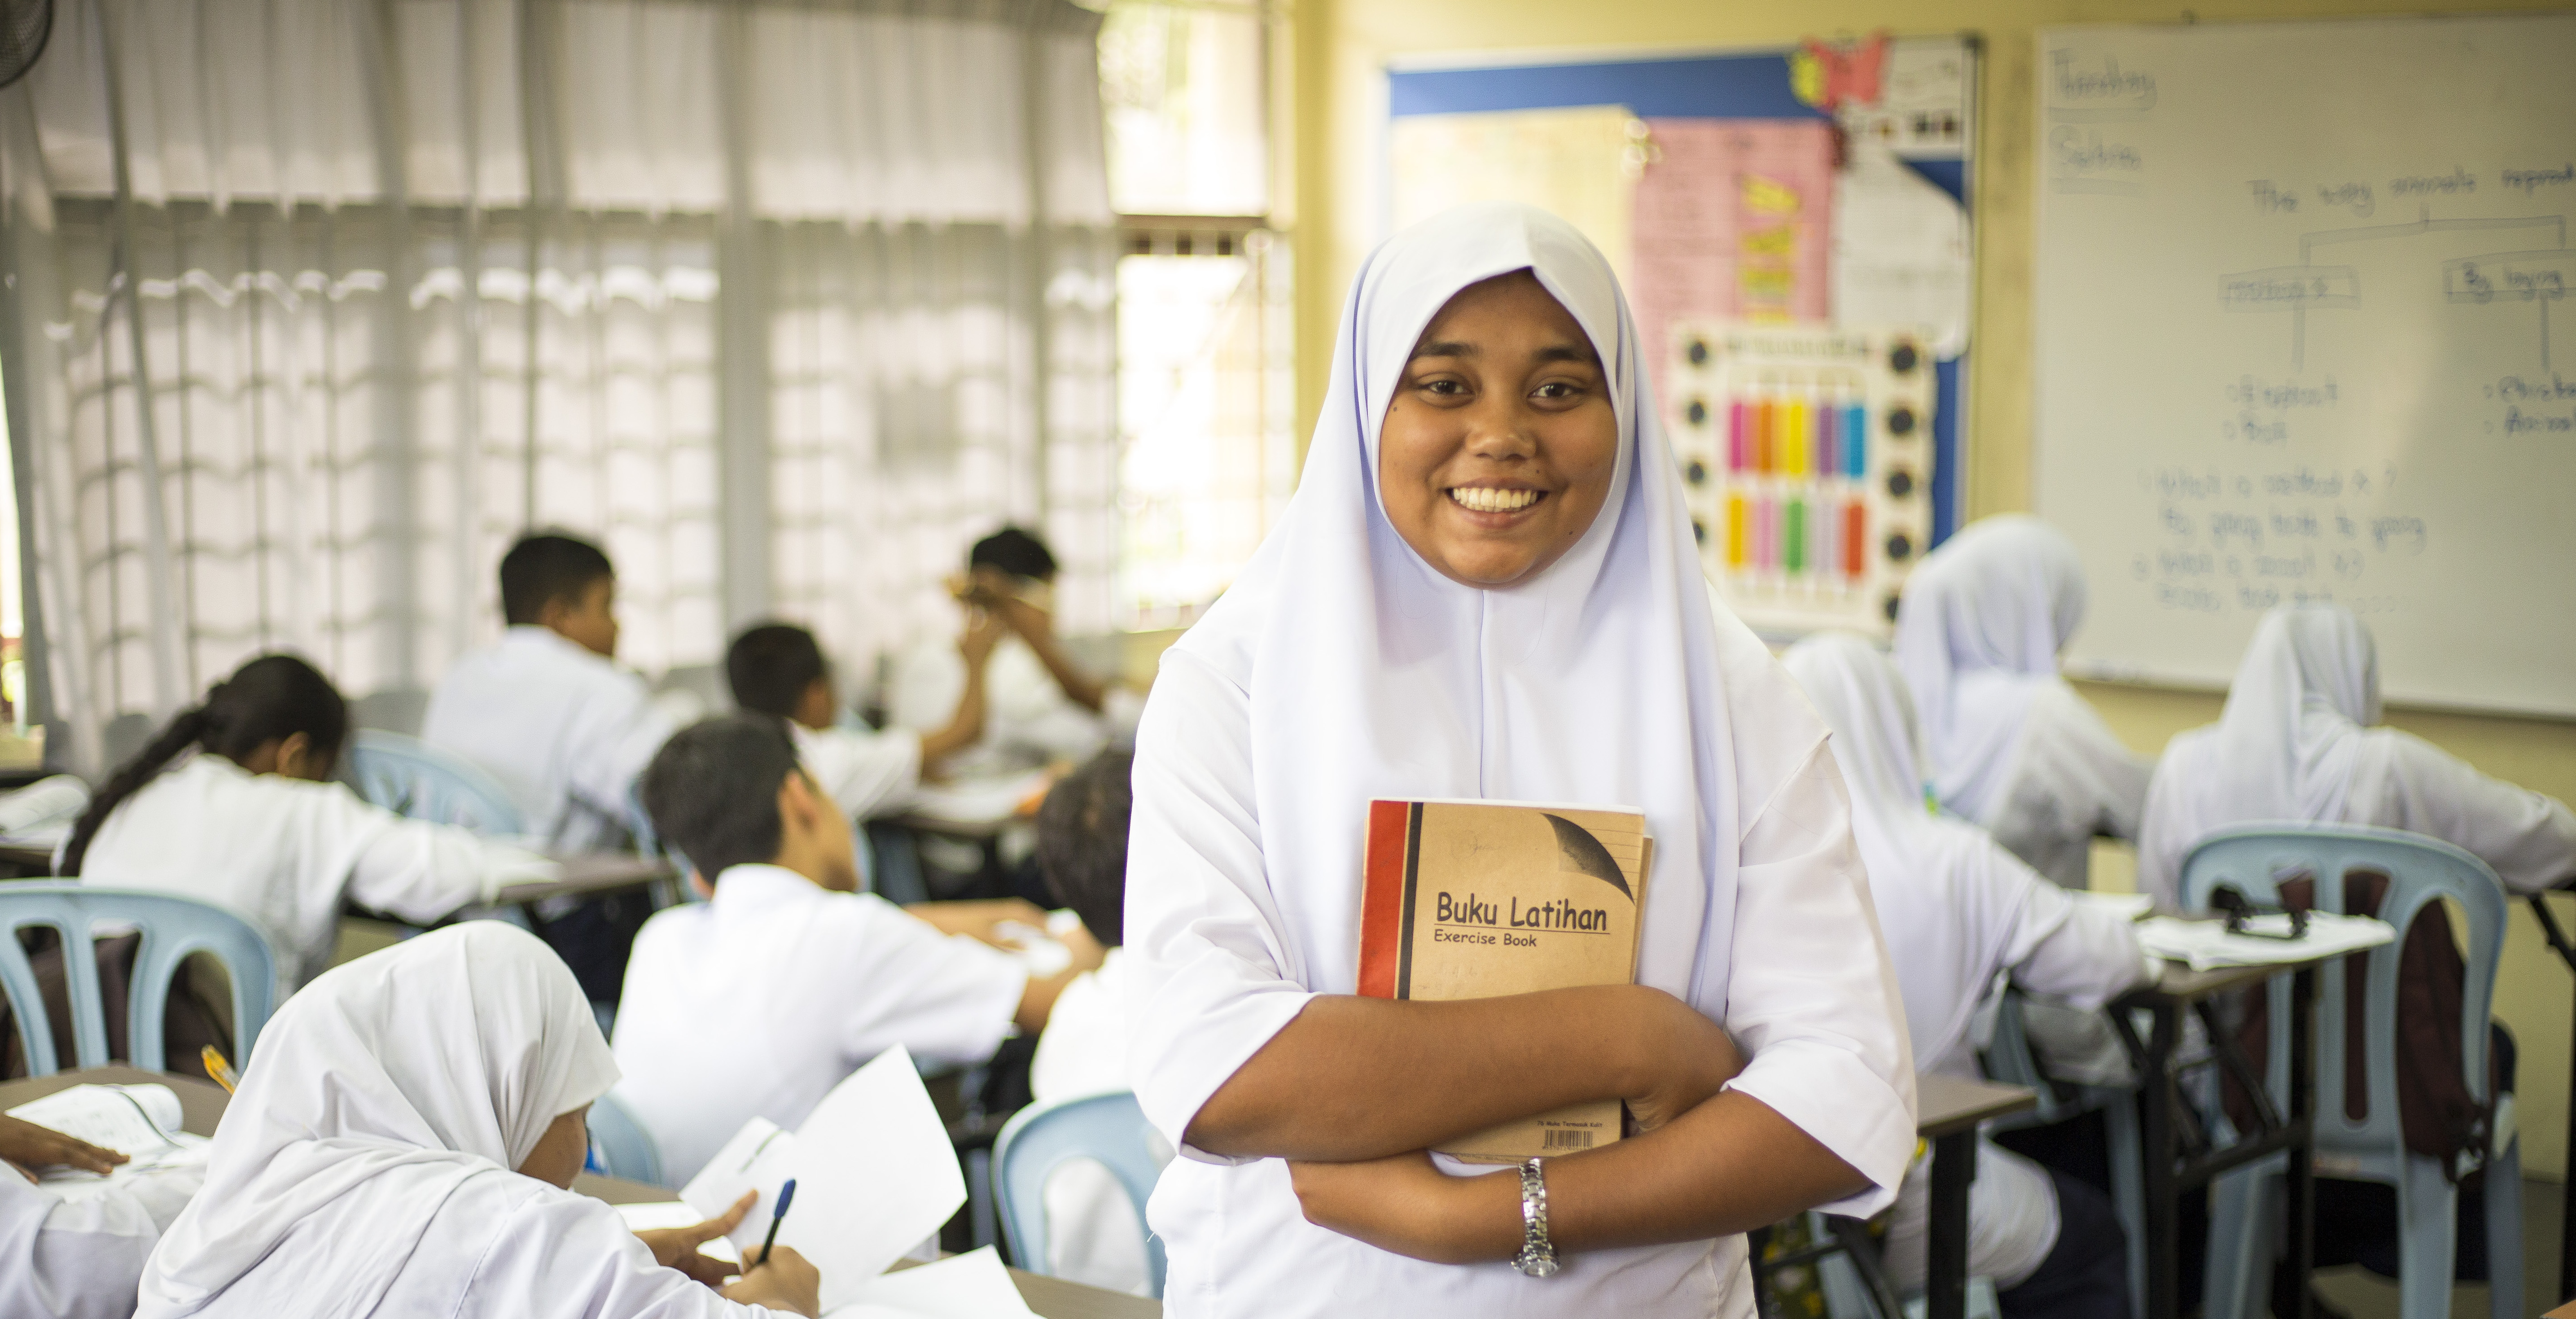 Shamshidah luptă împotriva șanselor pentru a avea acces la educație în Malaysia